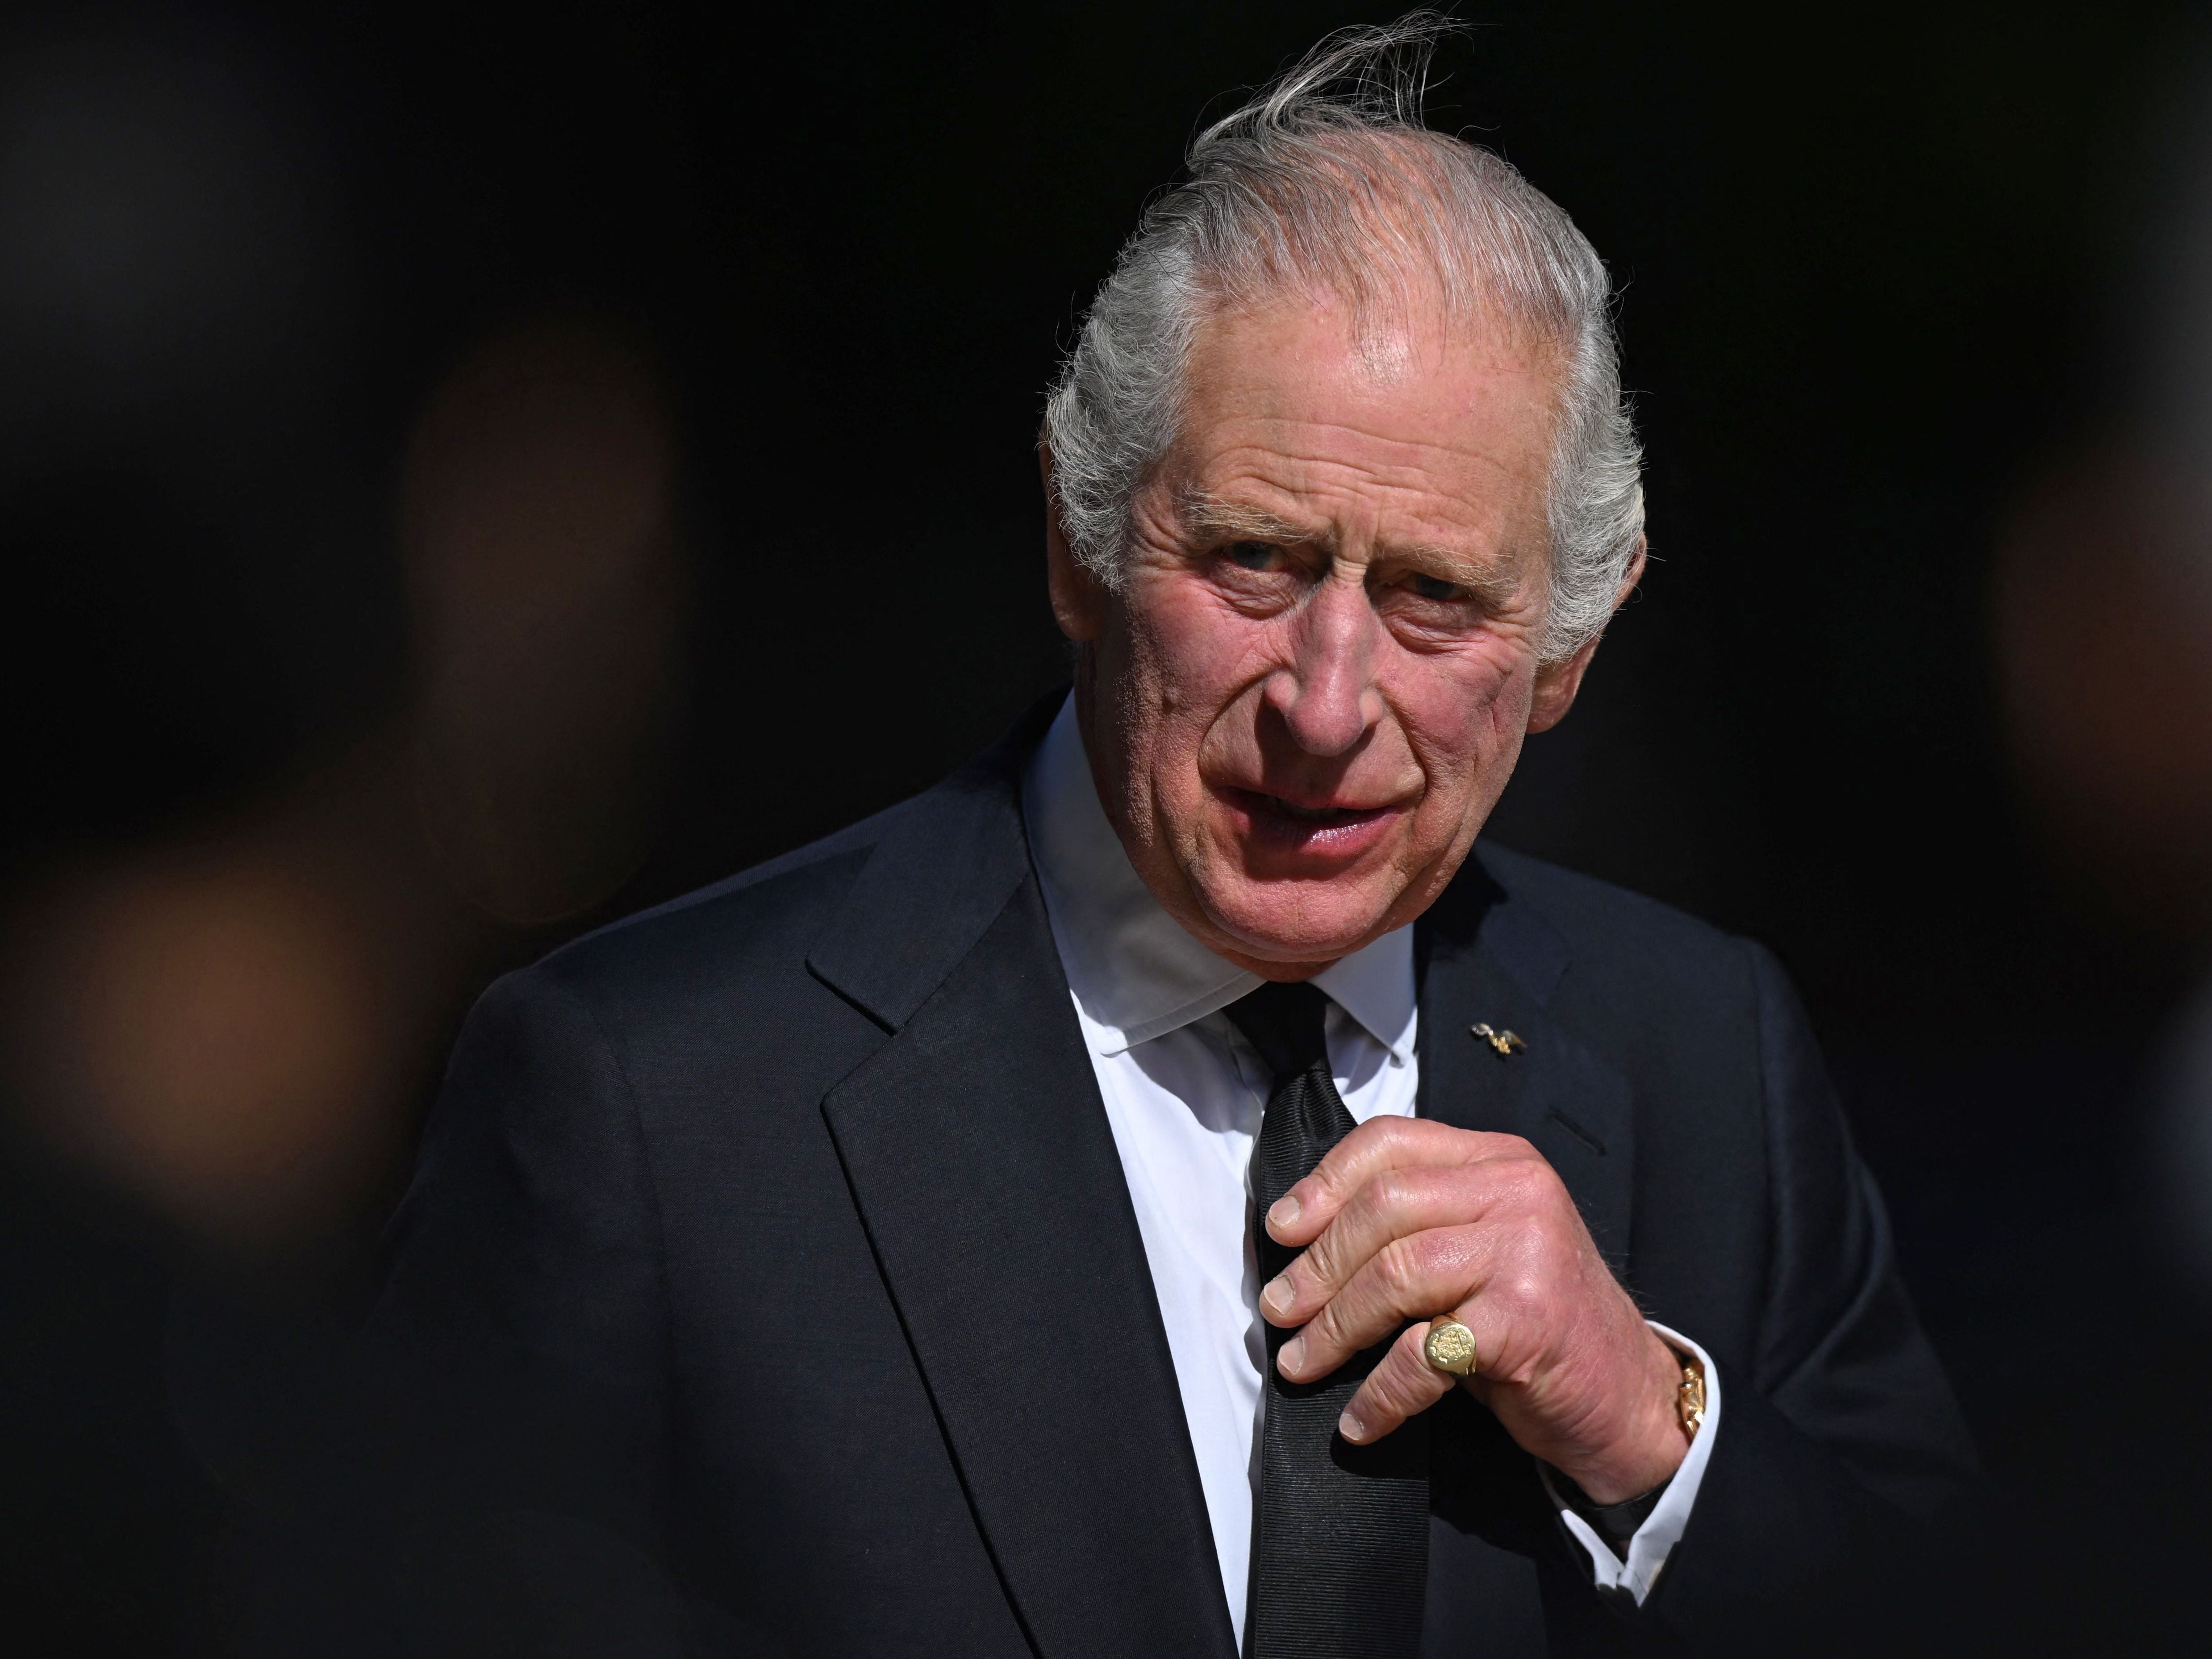 El rey Carlos III tiene la aprobación de los británicos, excepto para dar el título de reina a Camila, según encuesta en Reino Unido